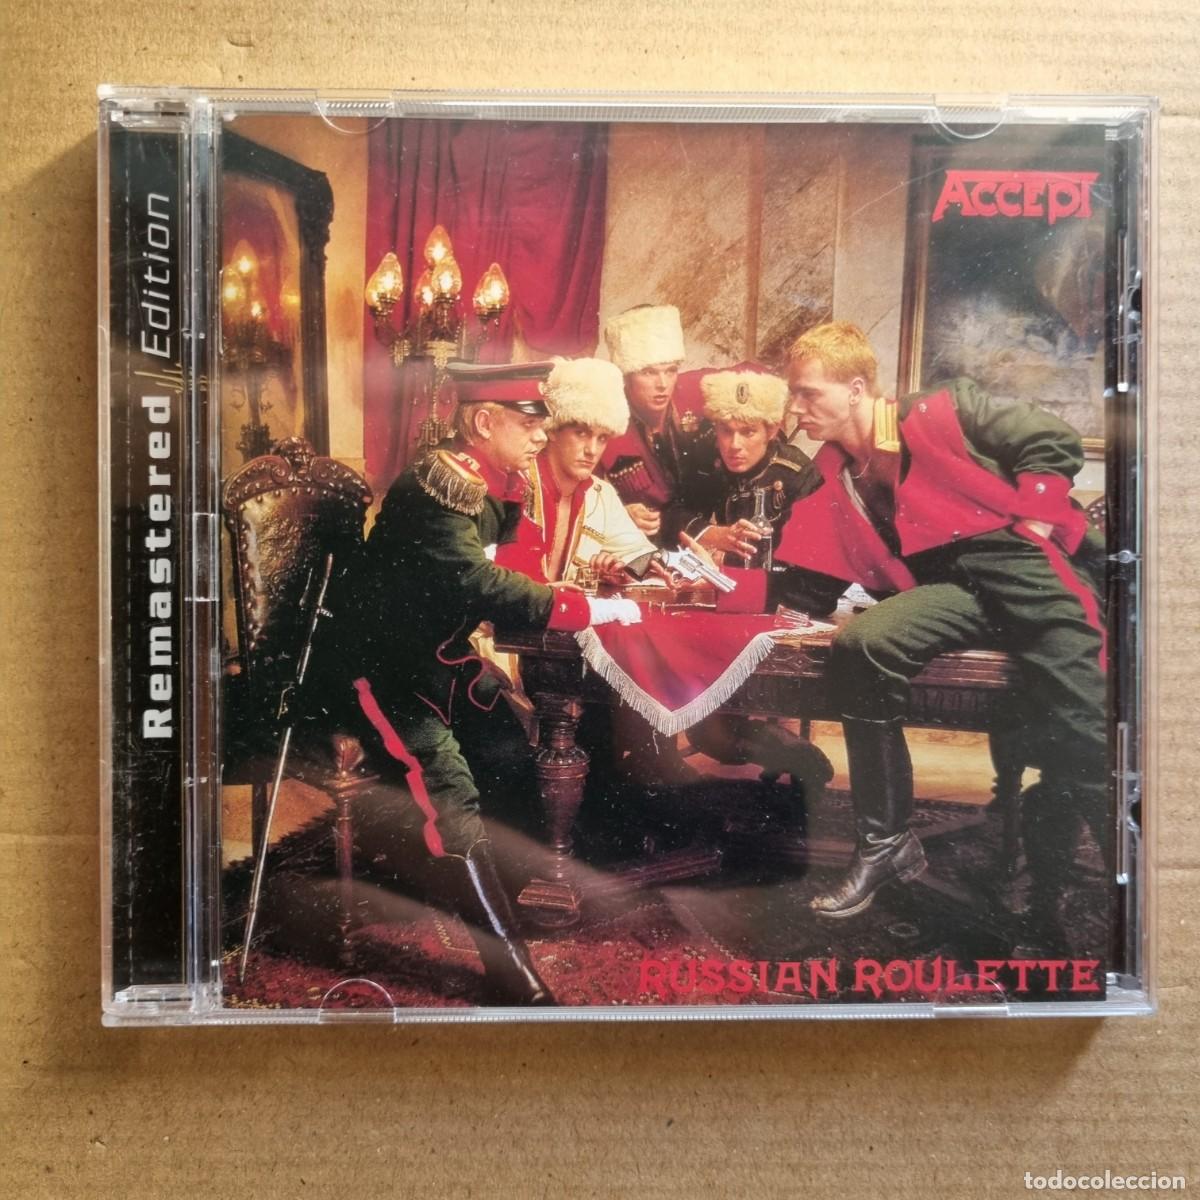 accept - russian roulette. cd. edición 2002. bu - Comprar CD de